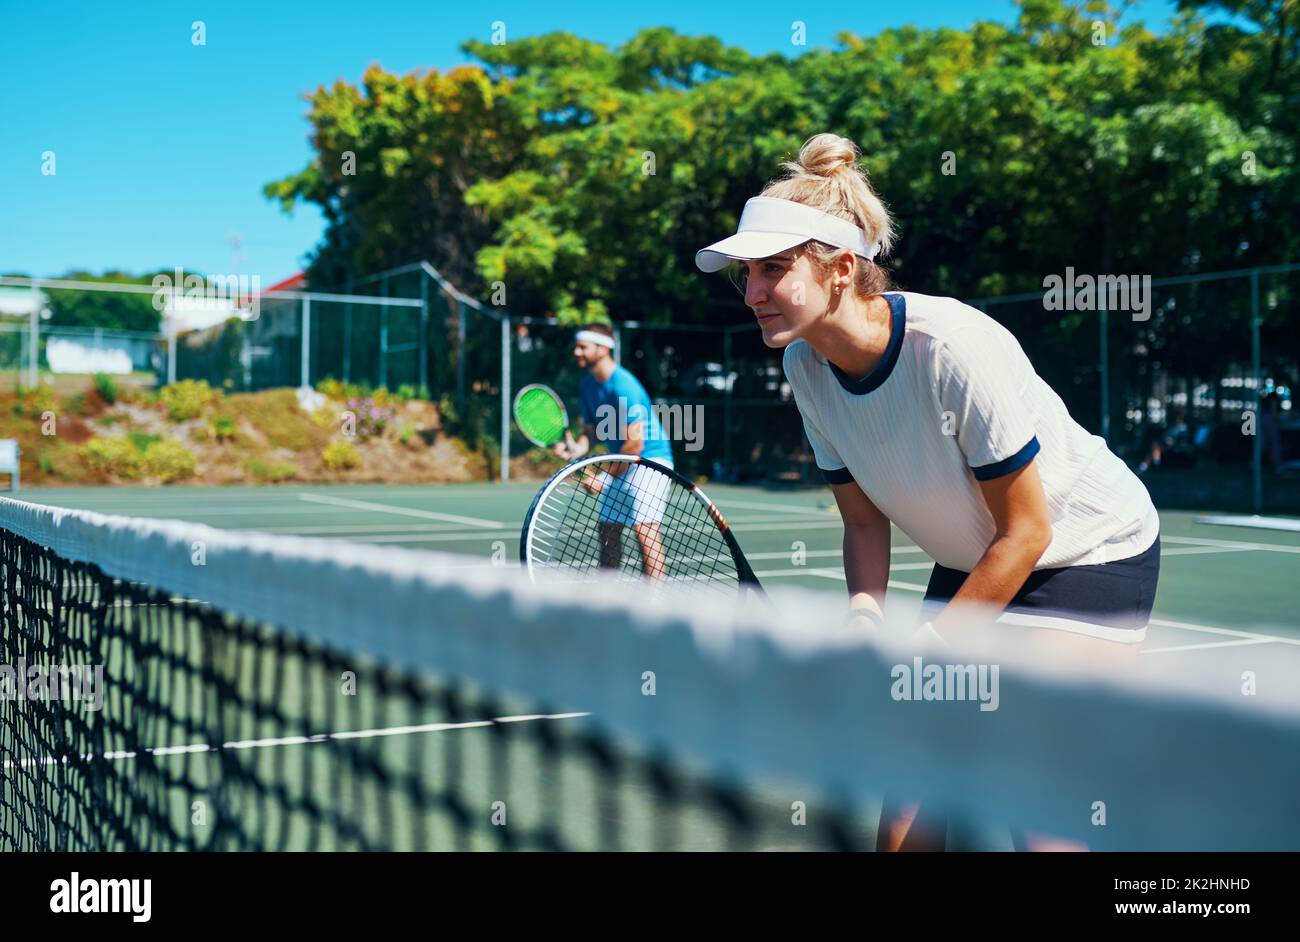 Laissez tout sur le terrain.Photo courte d'une équipe de tennis mixte jouant ensemble sur un court de tennis en plein air. Banque D'Images